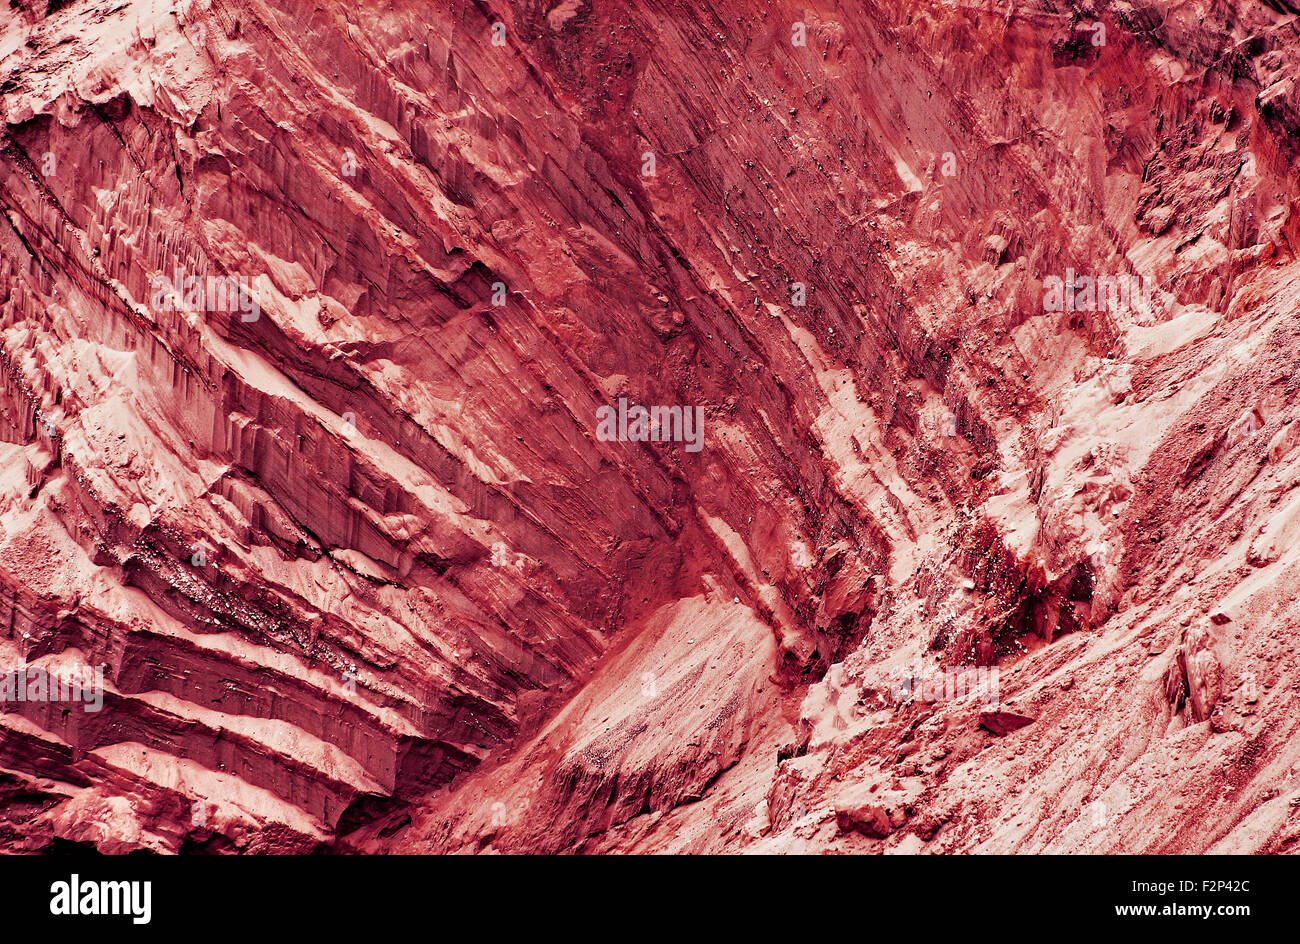 Pente fantastique rouge grâce à une couche de texture que abstract background.tonique de l'image. Banque D'Images